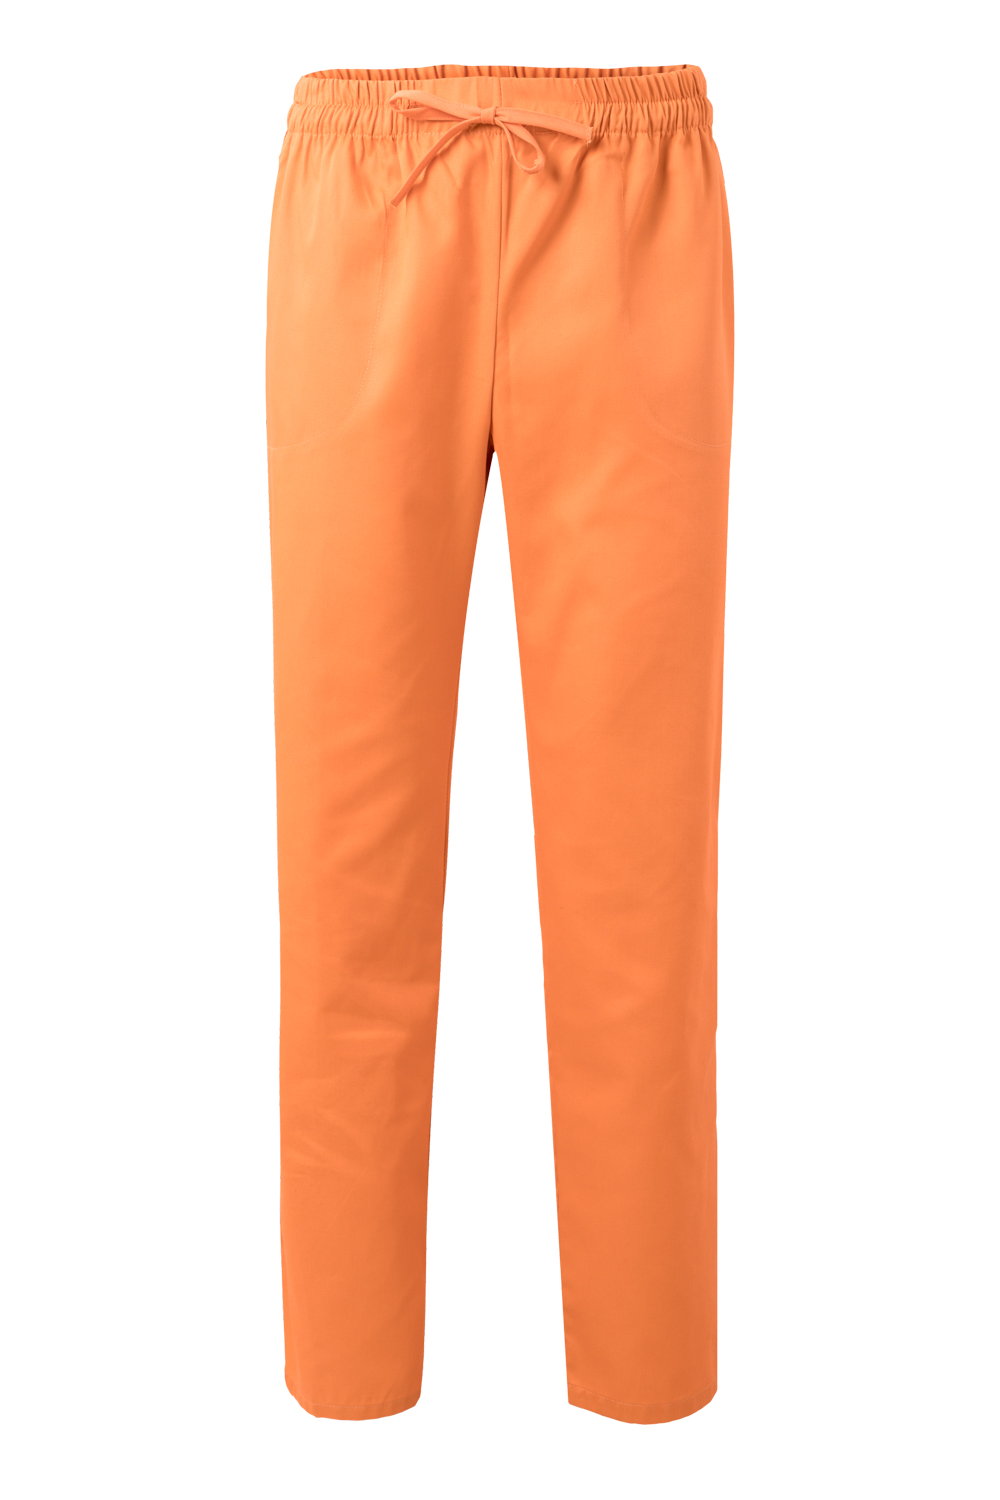 VELILLA GROUP EUROPE S.L.U. Dámske kuchárske nohavice - oranžová XL